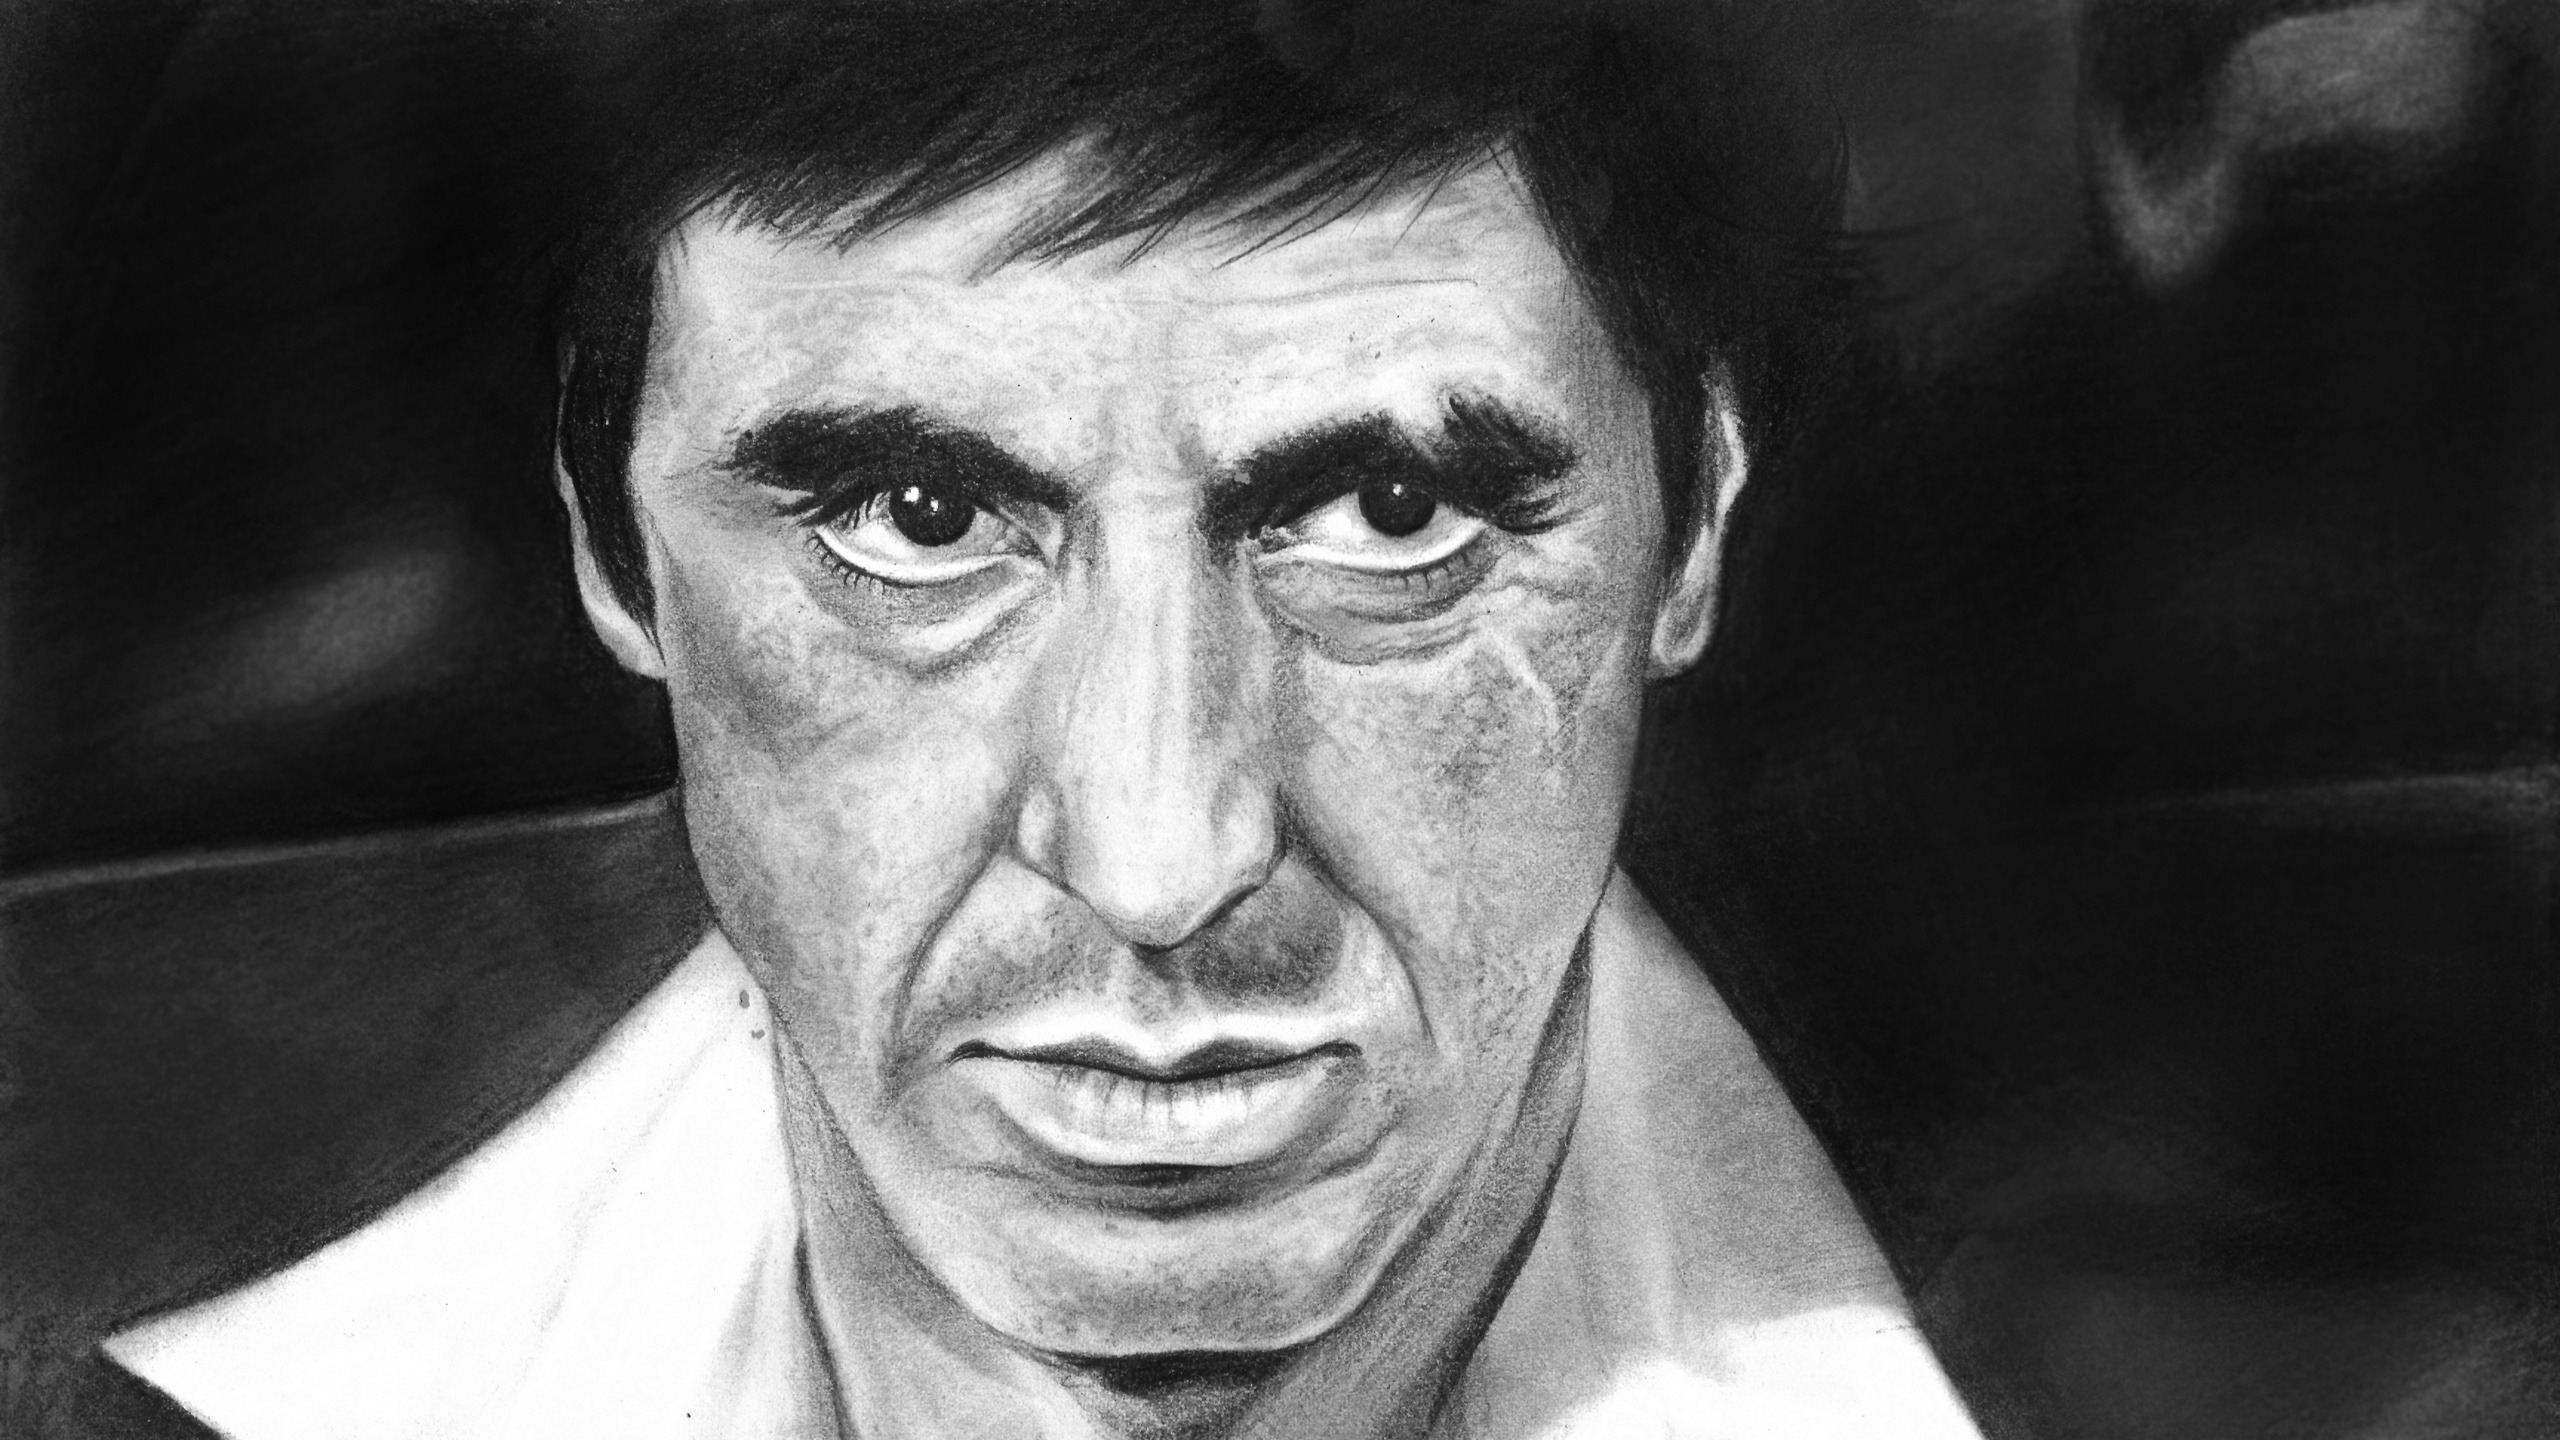 Al Pacino Scarface Fan Art for 2560x1440 HDTV resolution